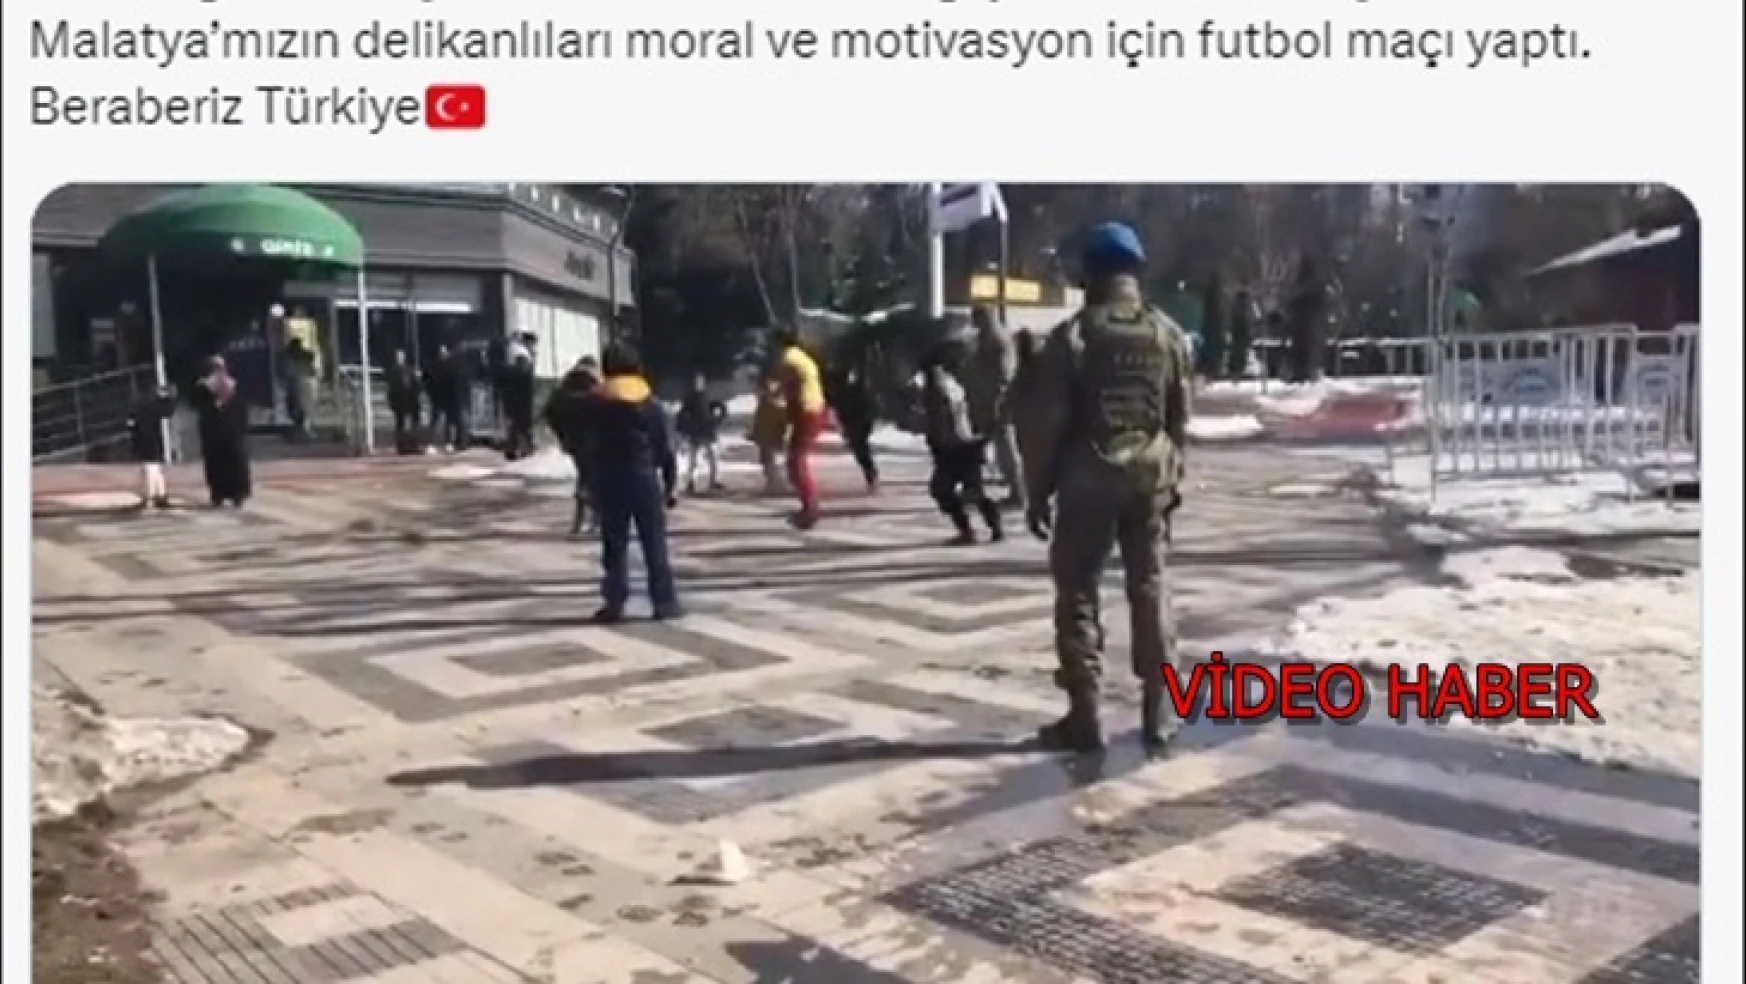 41'inci Komando Tugayı Mehmetçikleri, depremzede çocuklar ile moral için futbol maçı yaptı.